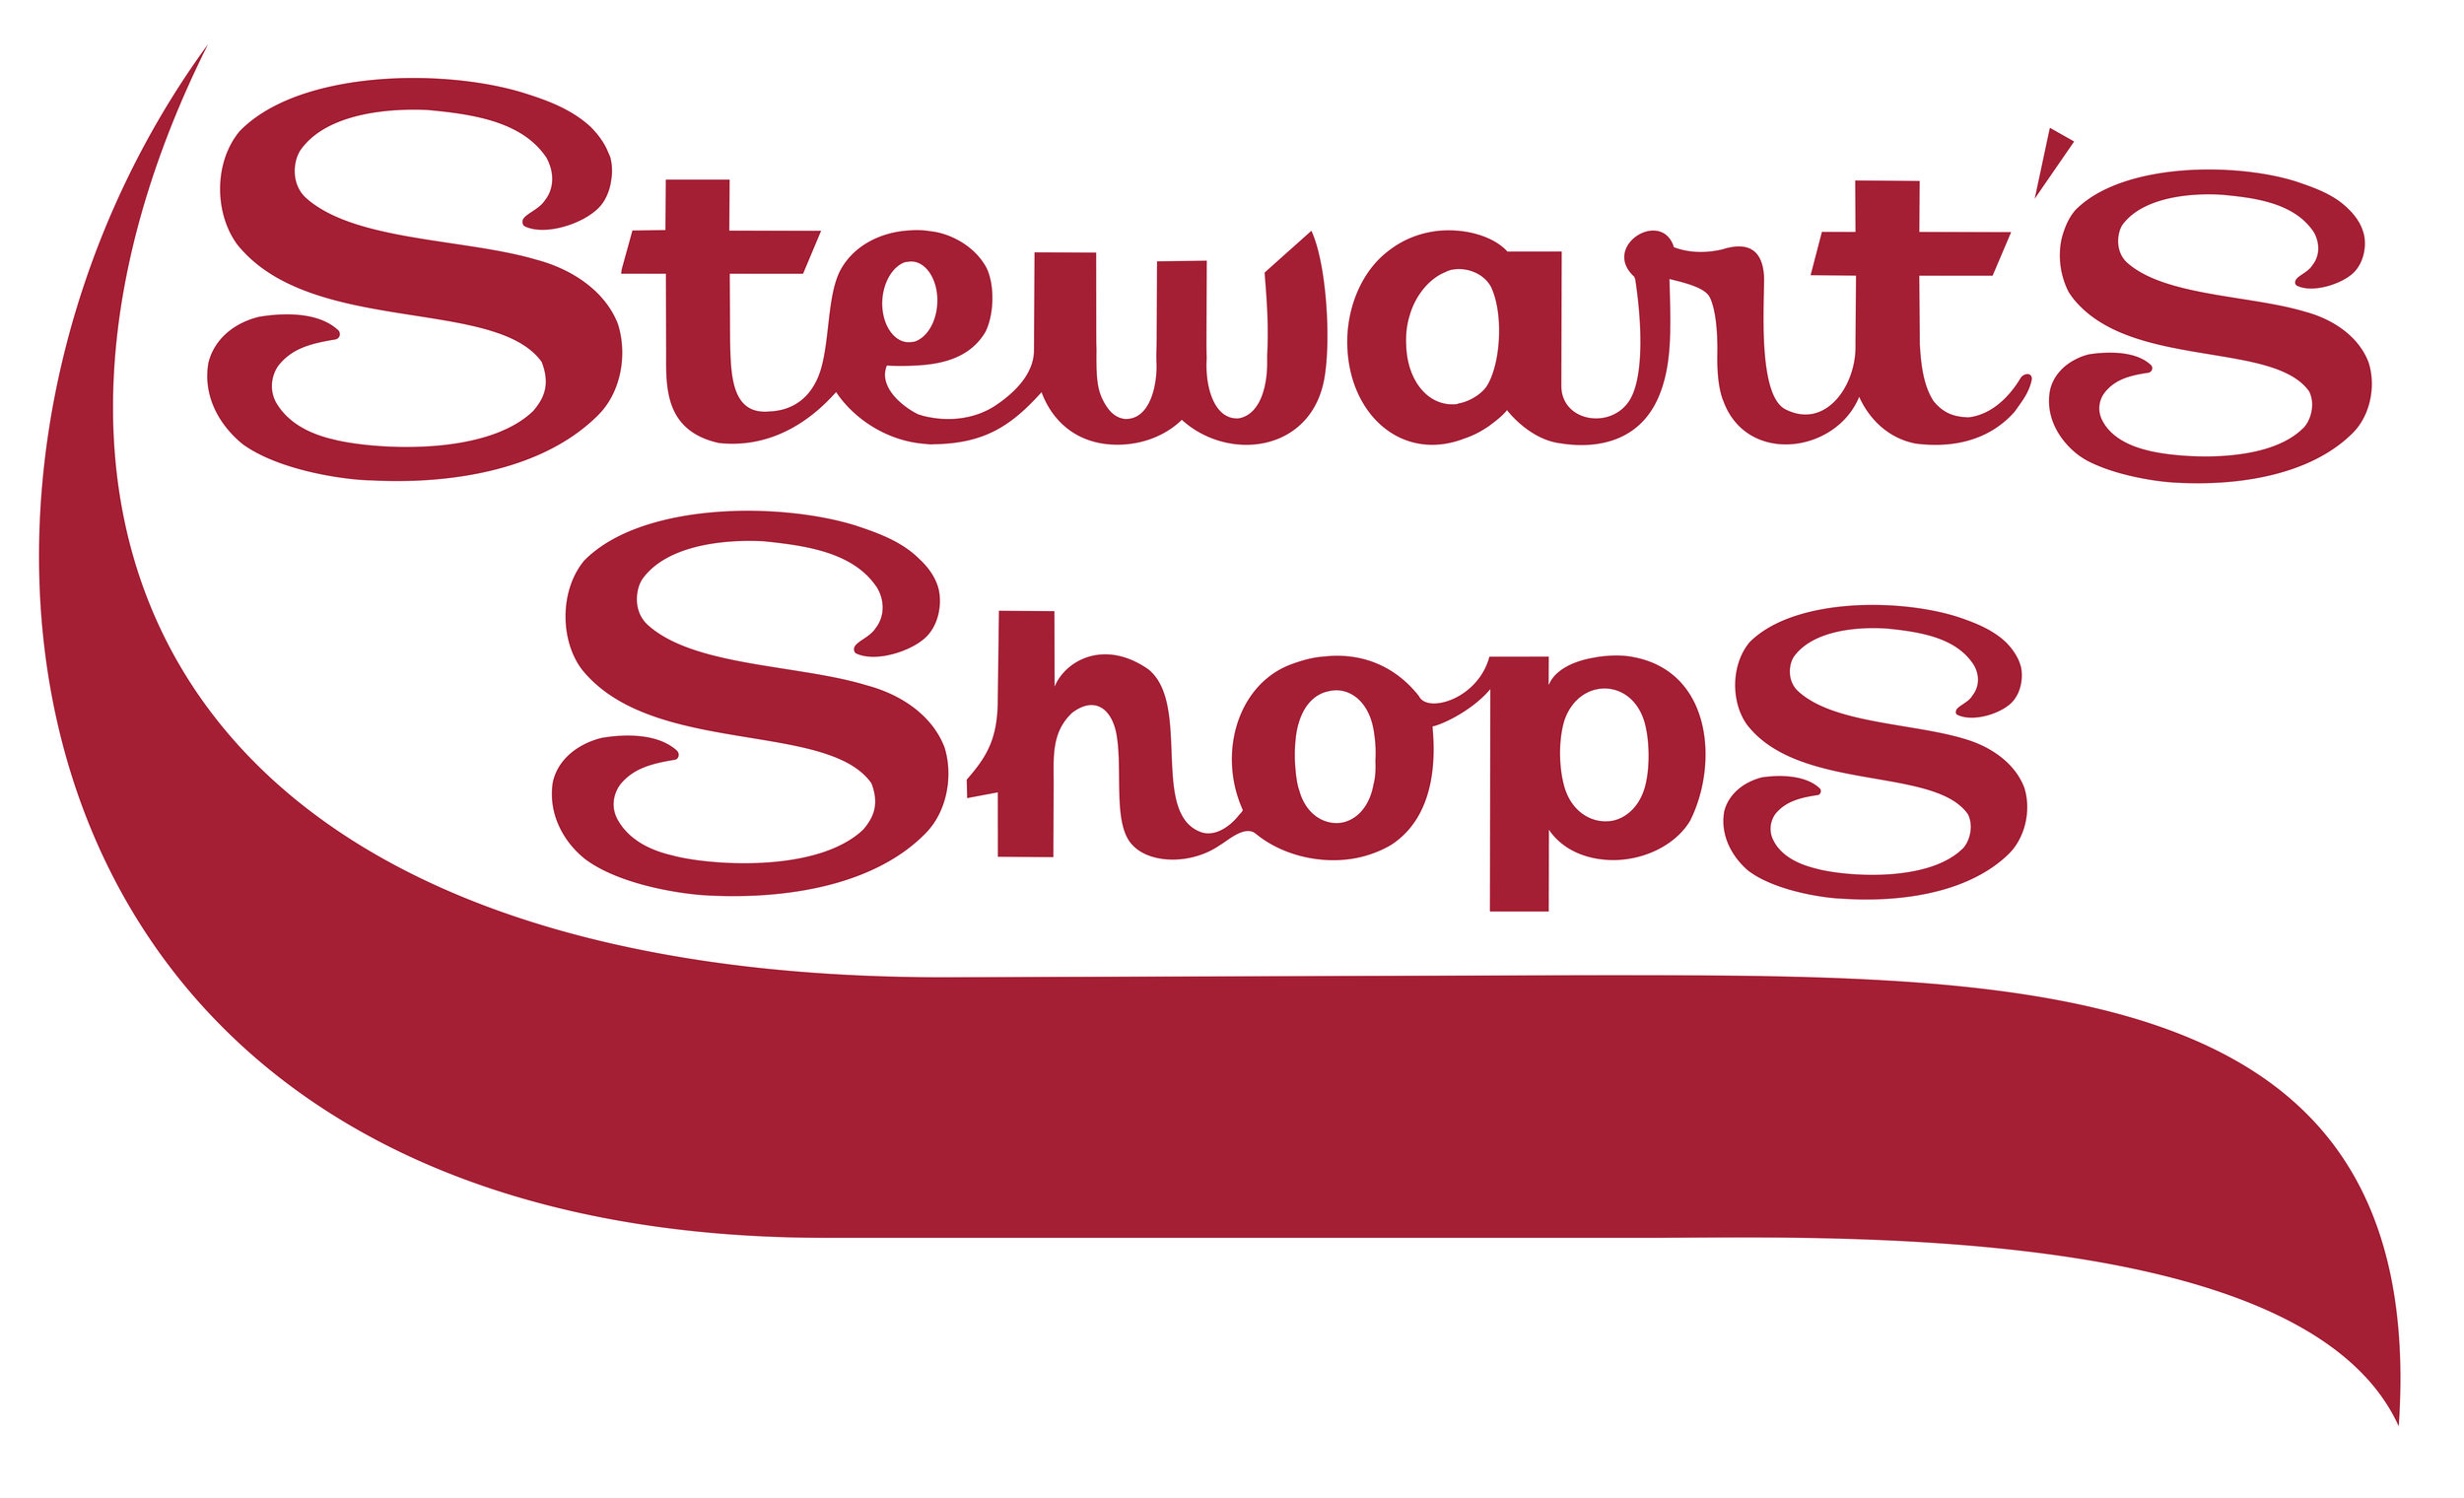 HI-RES Stewarts Shops Wave logo color.jpg